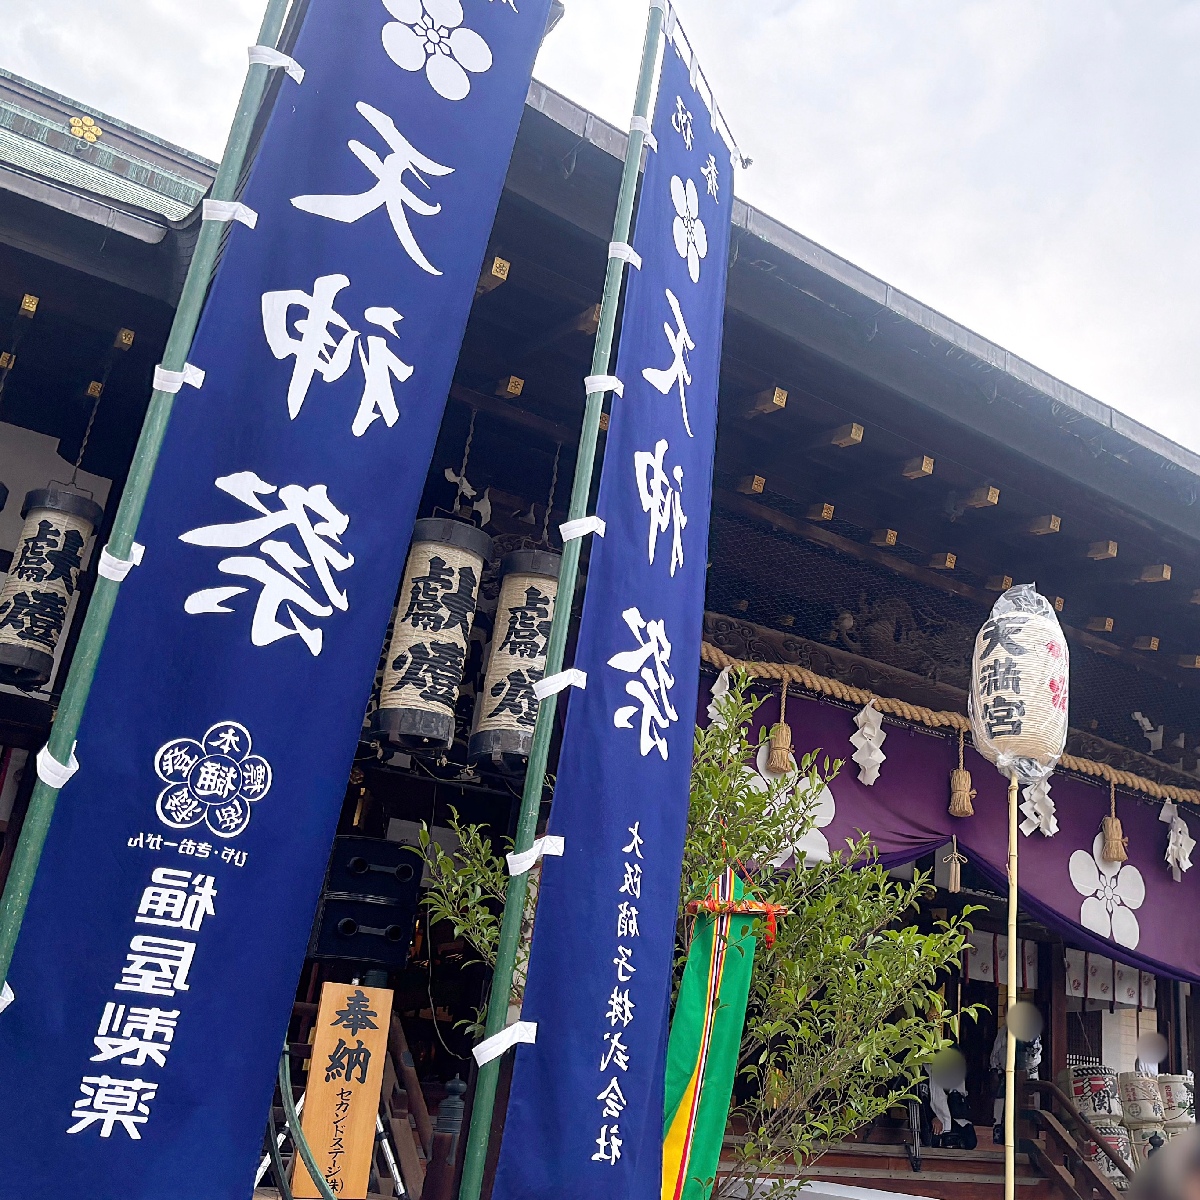 【大阪・天神祭】花火が見えるおすすめスポットや祭りの様子など、天神祭の楽しみ方をご紹介